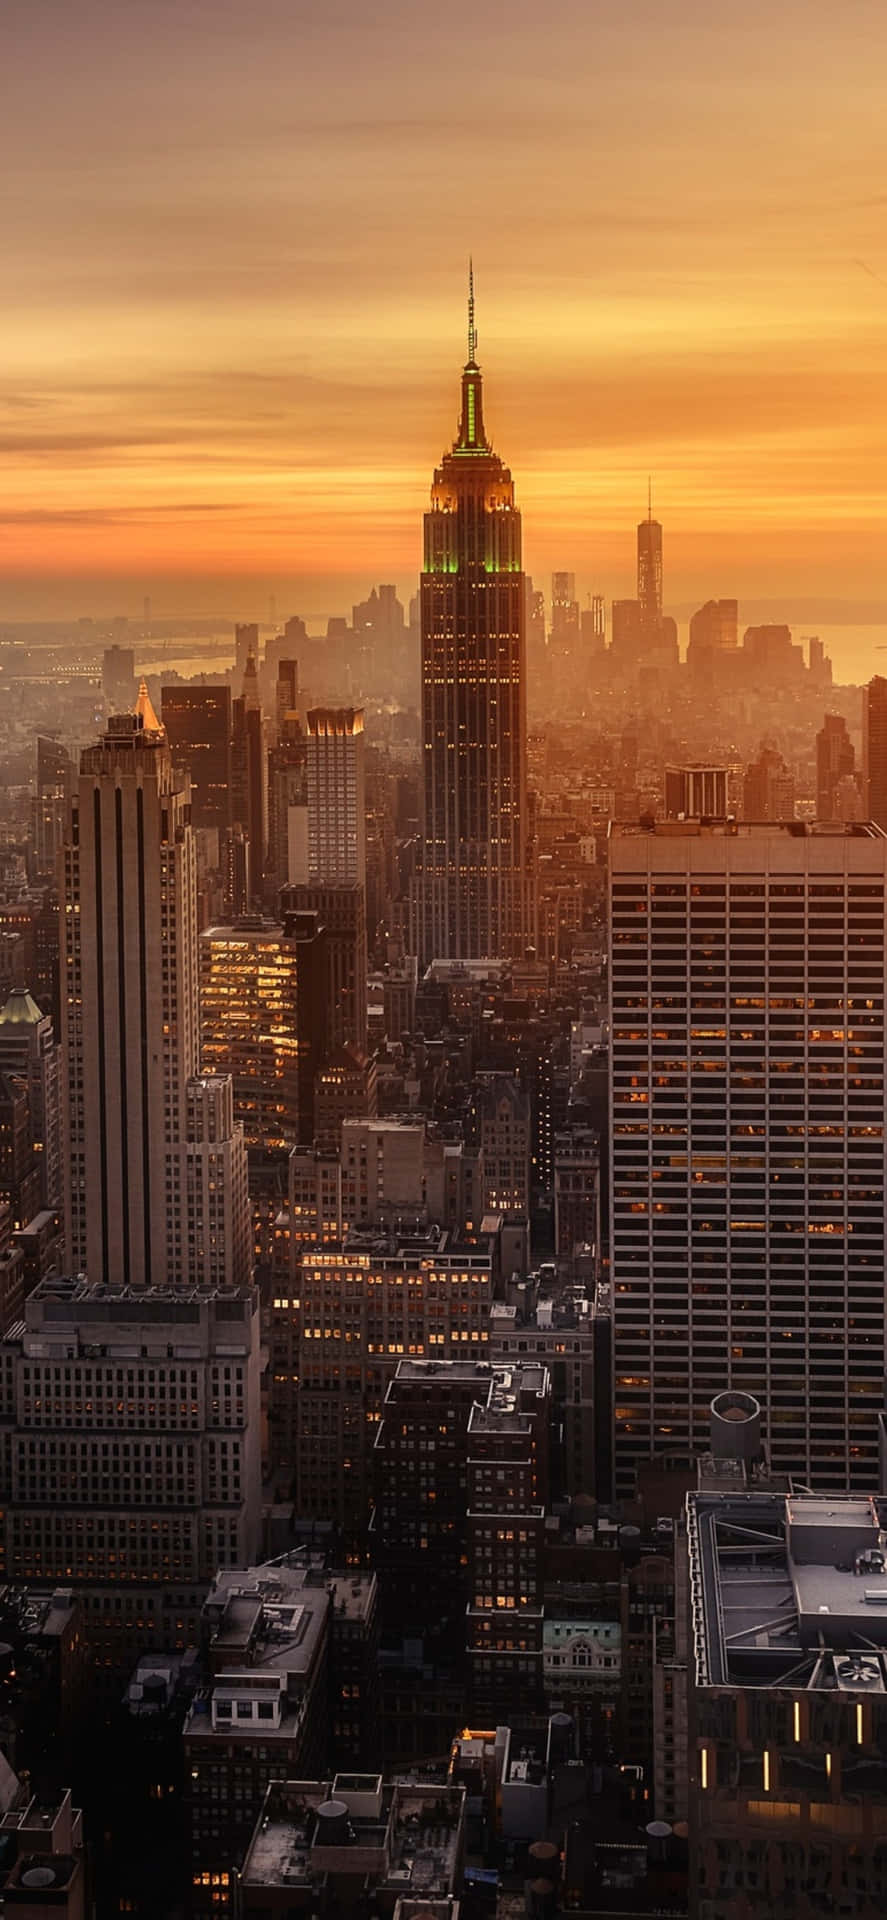 Iphonex Bakgrundsbild Med Solnedgångsbilder Av Empire State Building I New York City.